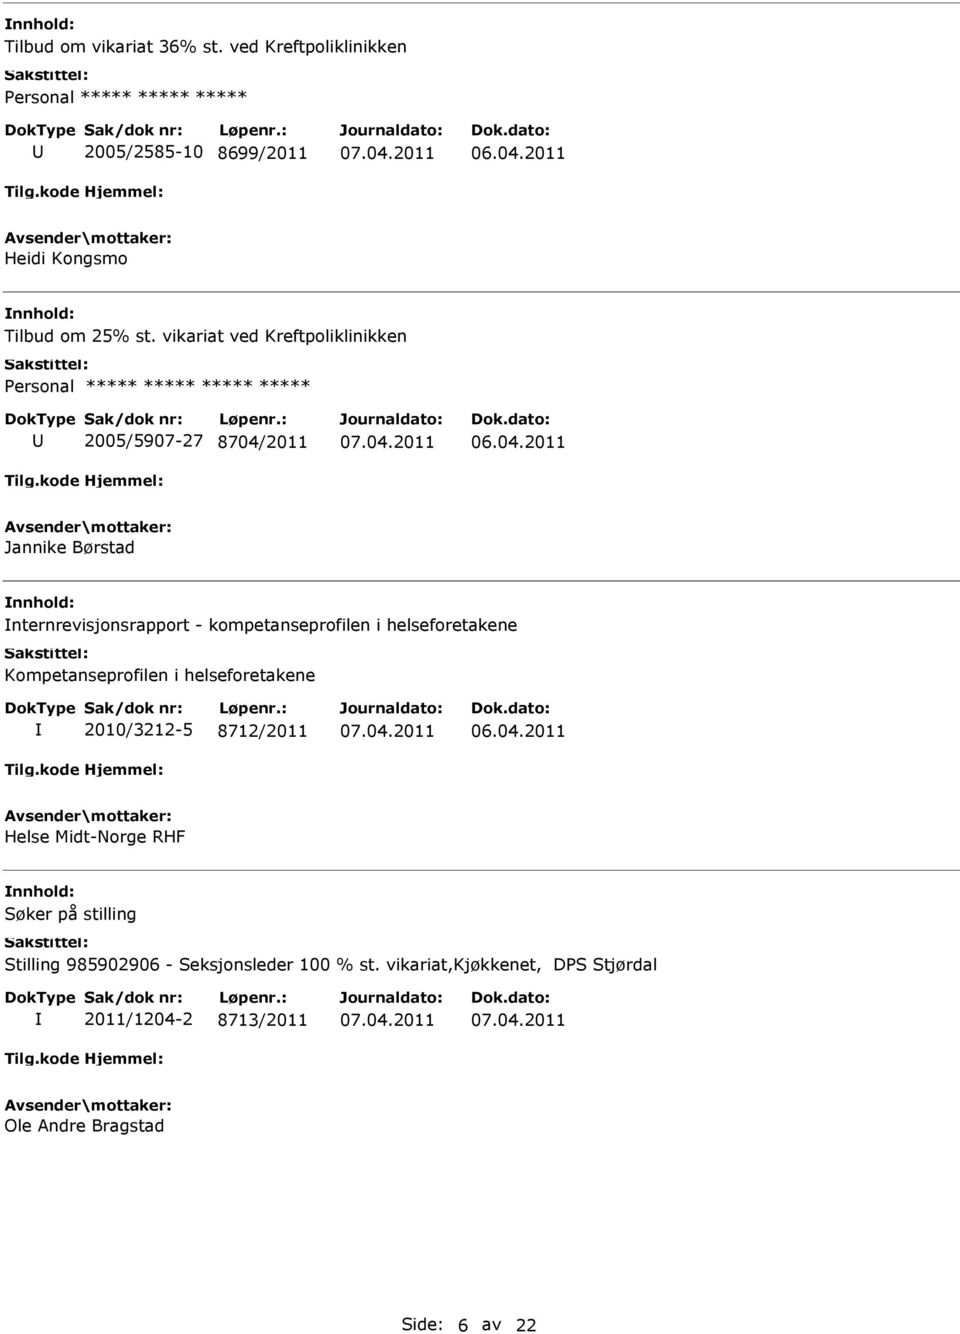 kompetanseprofilen i helseforetakene Kompetanseprofilen i helseforetakene 2010/3212-5 8712/2011 Helse Midt-Norge RHF